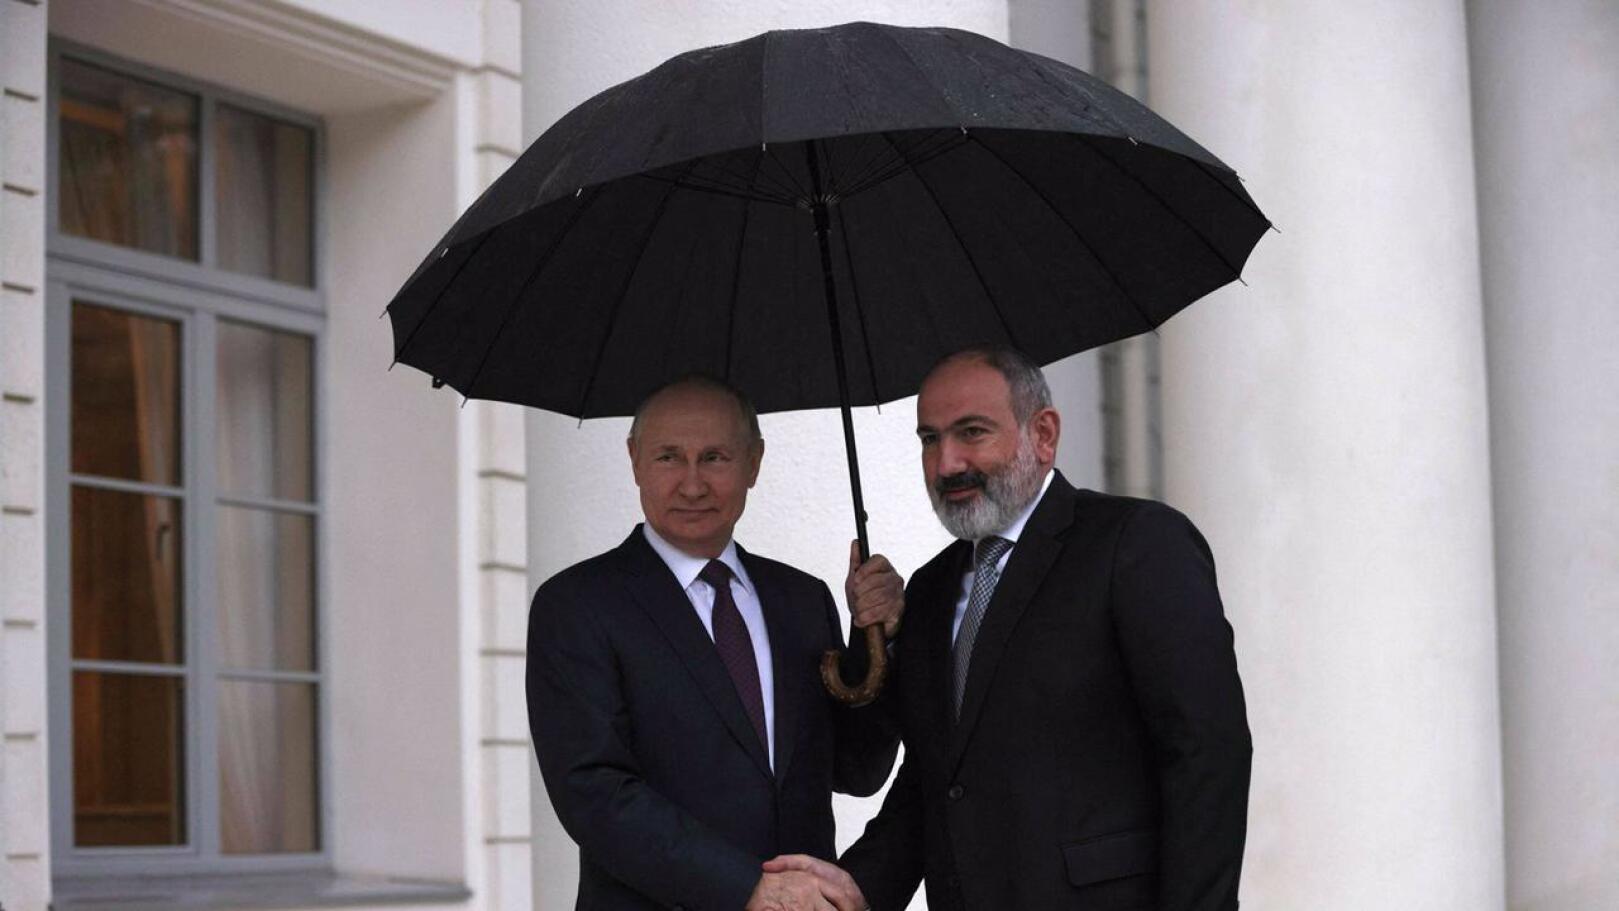 Presidentti Vladimir Putin kättelee Armenian presidenttiä Nikol Pashinyania. Kuva on Venäjän valtiollisen uutistoimiston Sputnikin välittämä. Lehtikuvalla ei ole ollut mahdollisuutta todentaa kuvaustilanteen aitoutta tai riippumattomuutta.